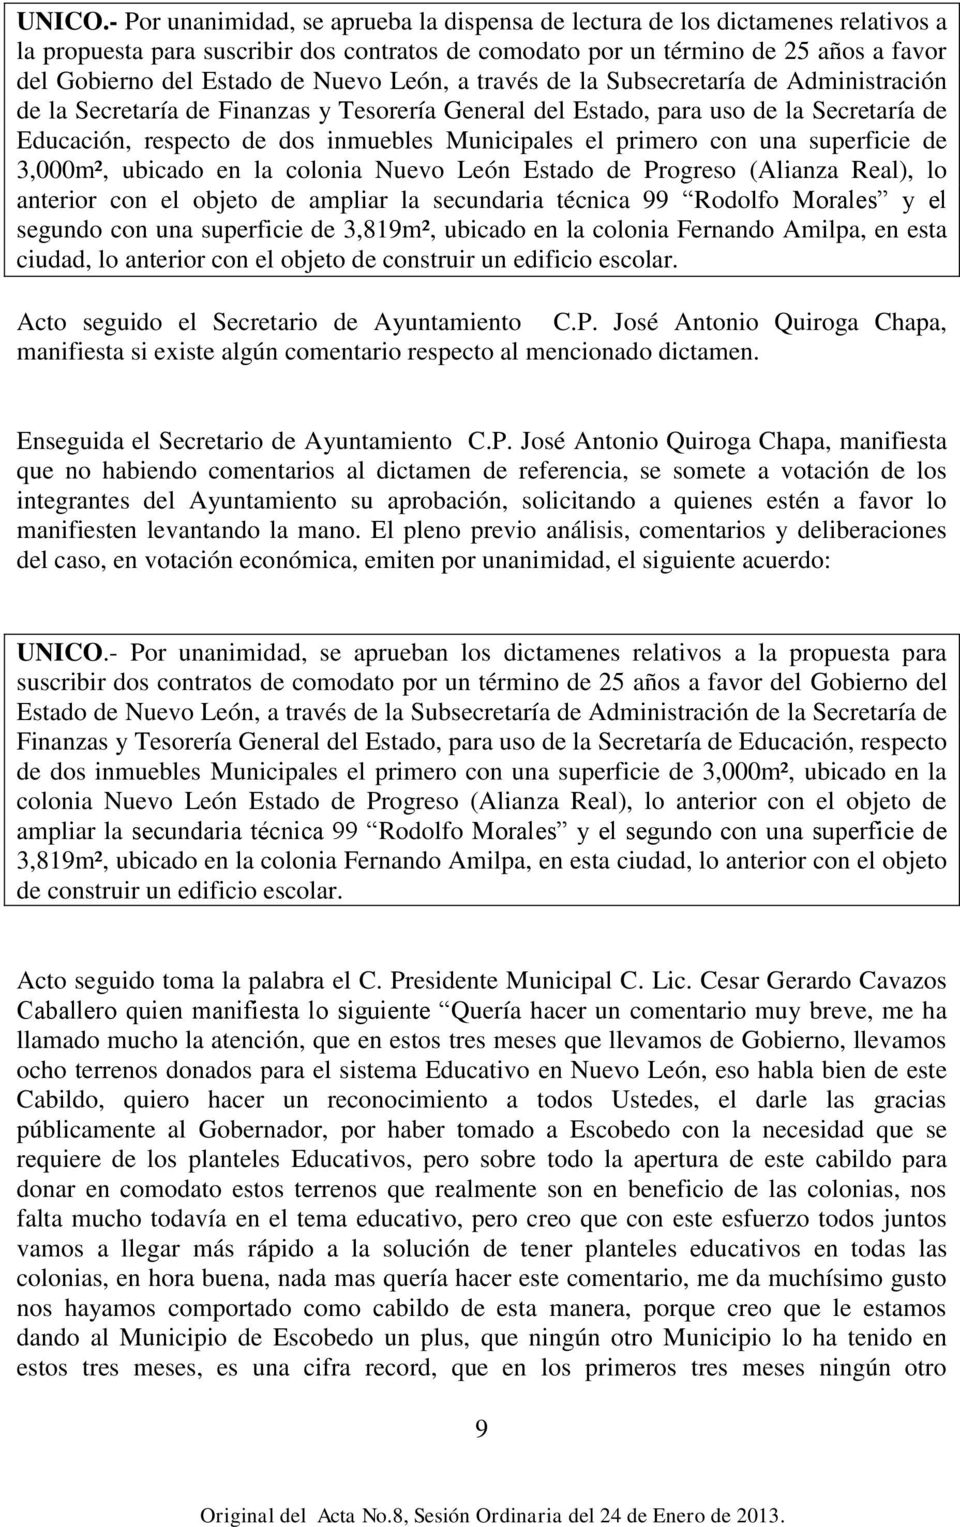 Nuevo León, a través de la Subsecretaría de Administración de la Secretaría de Finanzas y Tesorería General del Estado, para uso de la Secretaría de Educación, respecto de dos inmuebles Municipales